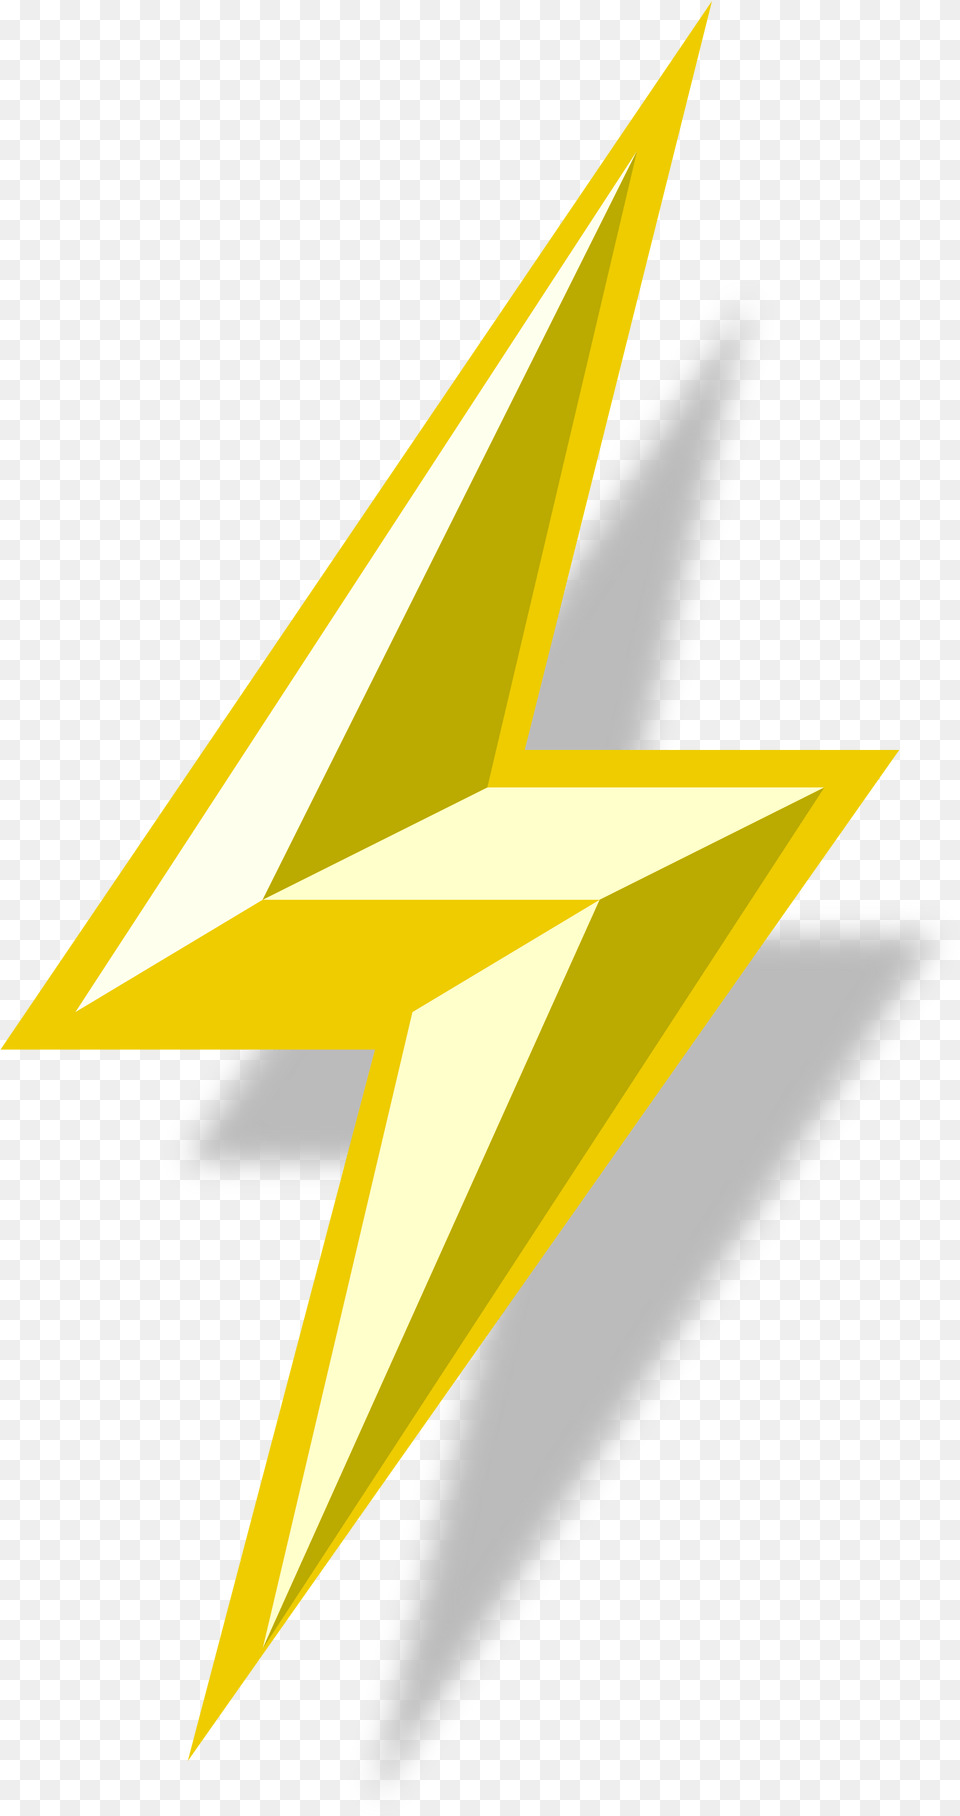 Lightning Bolt 6 Image Lightning Bolt Transparent, Star Symbol, Symbol, Gold, Aircraft Free Png Download